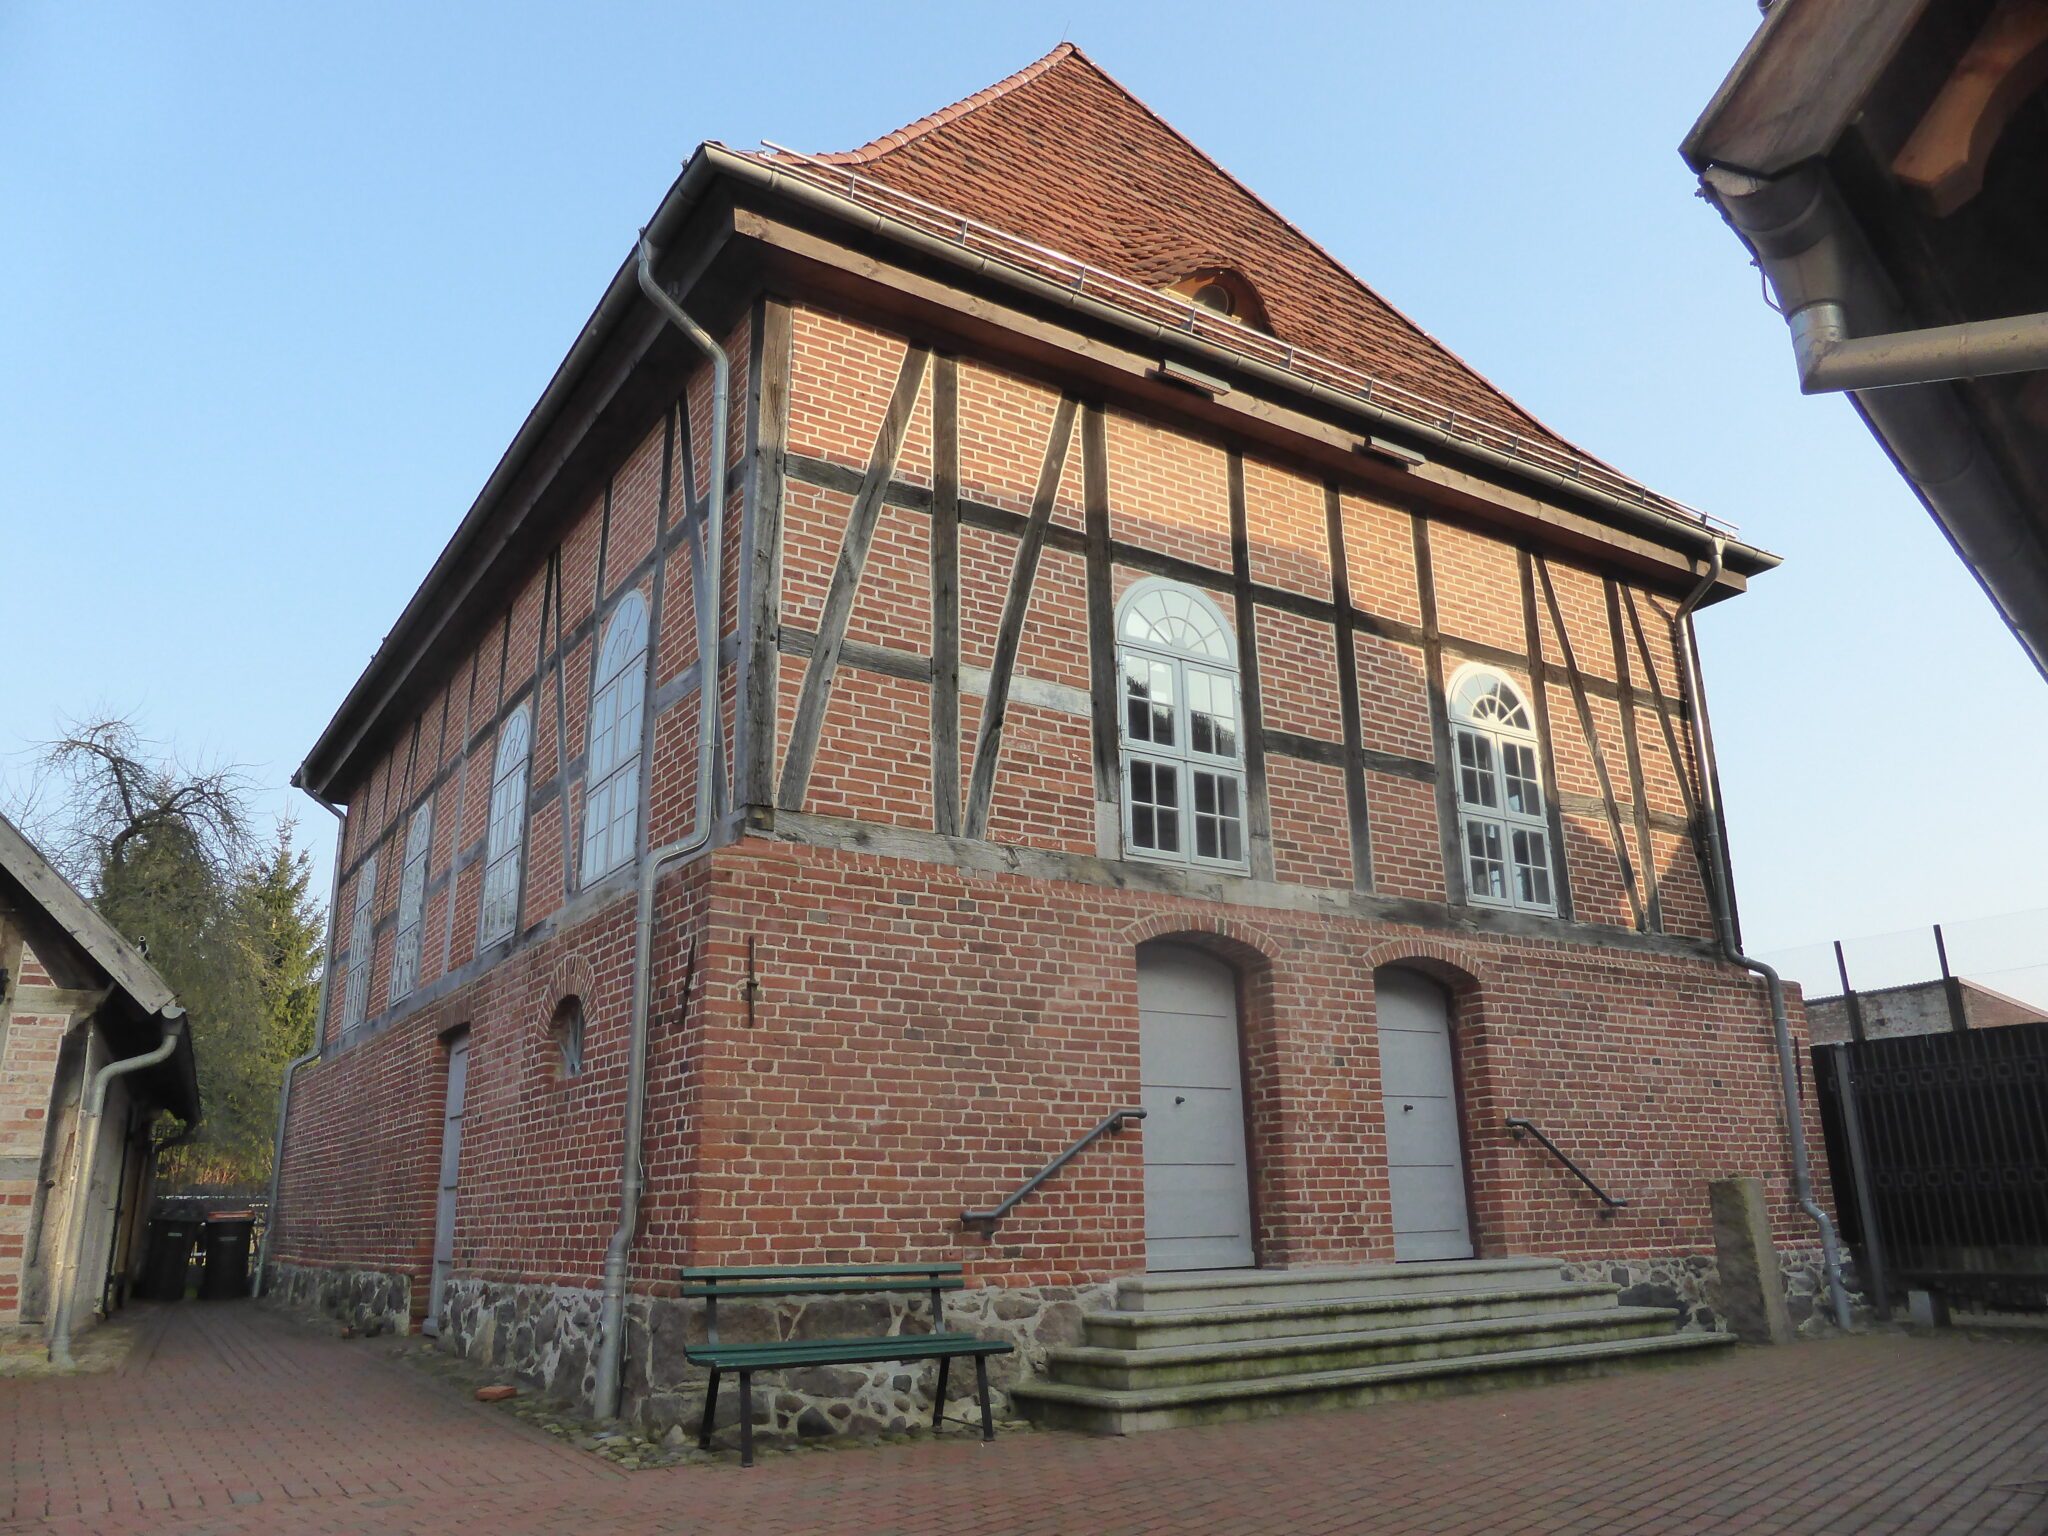 Gebetshaus der Alten Synagoge Hagenow. Dort werden auch Konzerte veranstaltet, etwa im Rahmen der Festspiele Mecklenburg-Vorpommern.